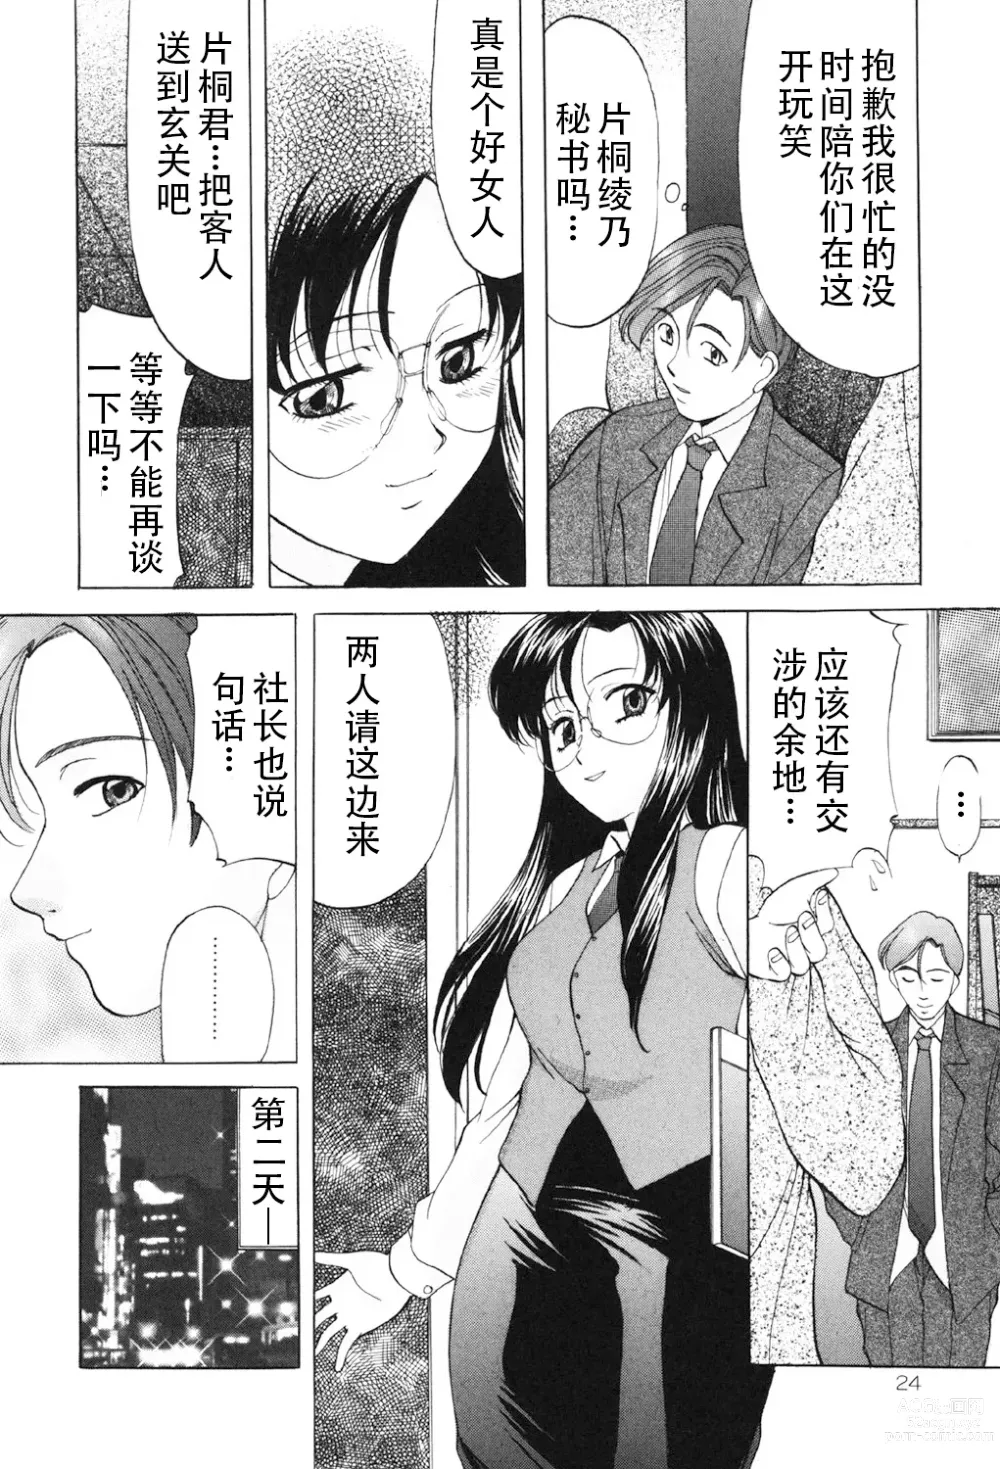 Page 23 of manga Kichiku Paradise - The Cruel Person Paradise